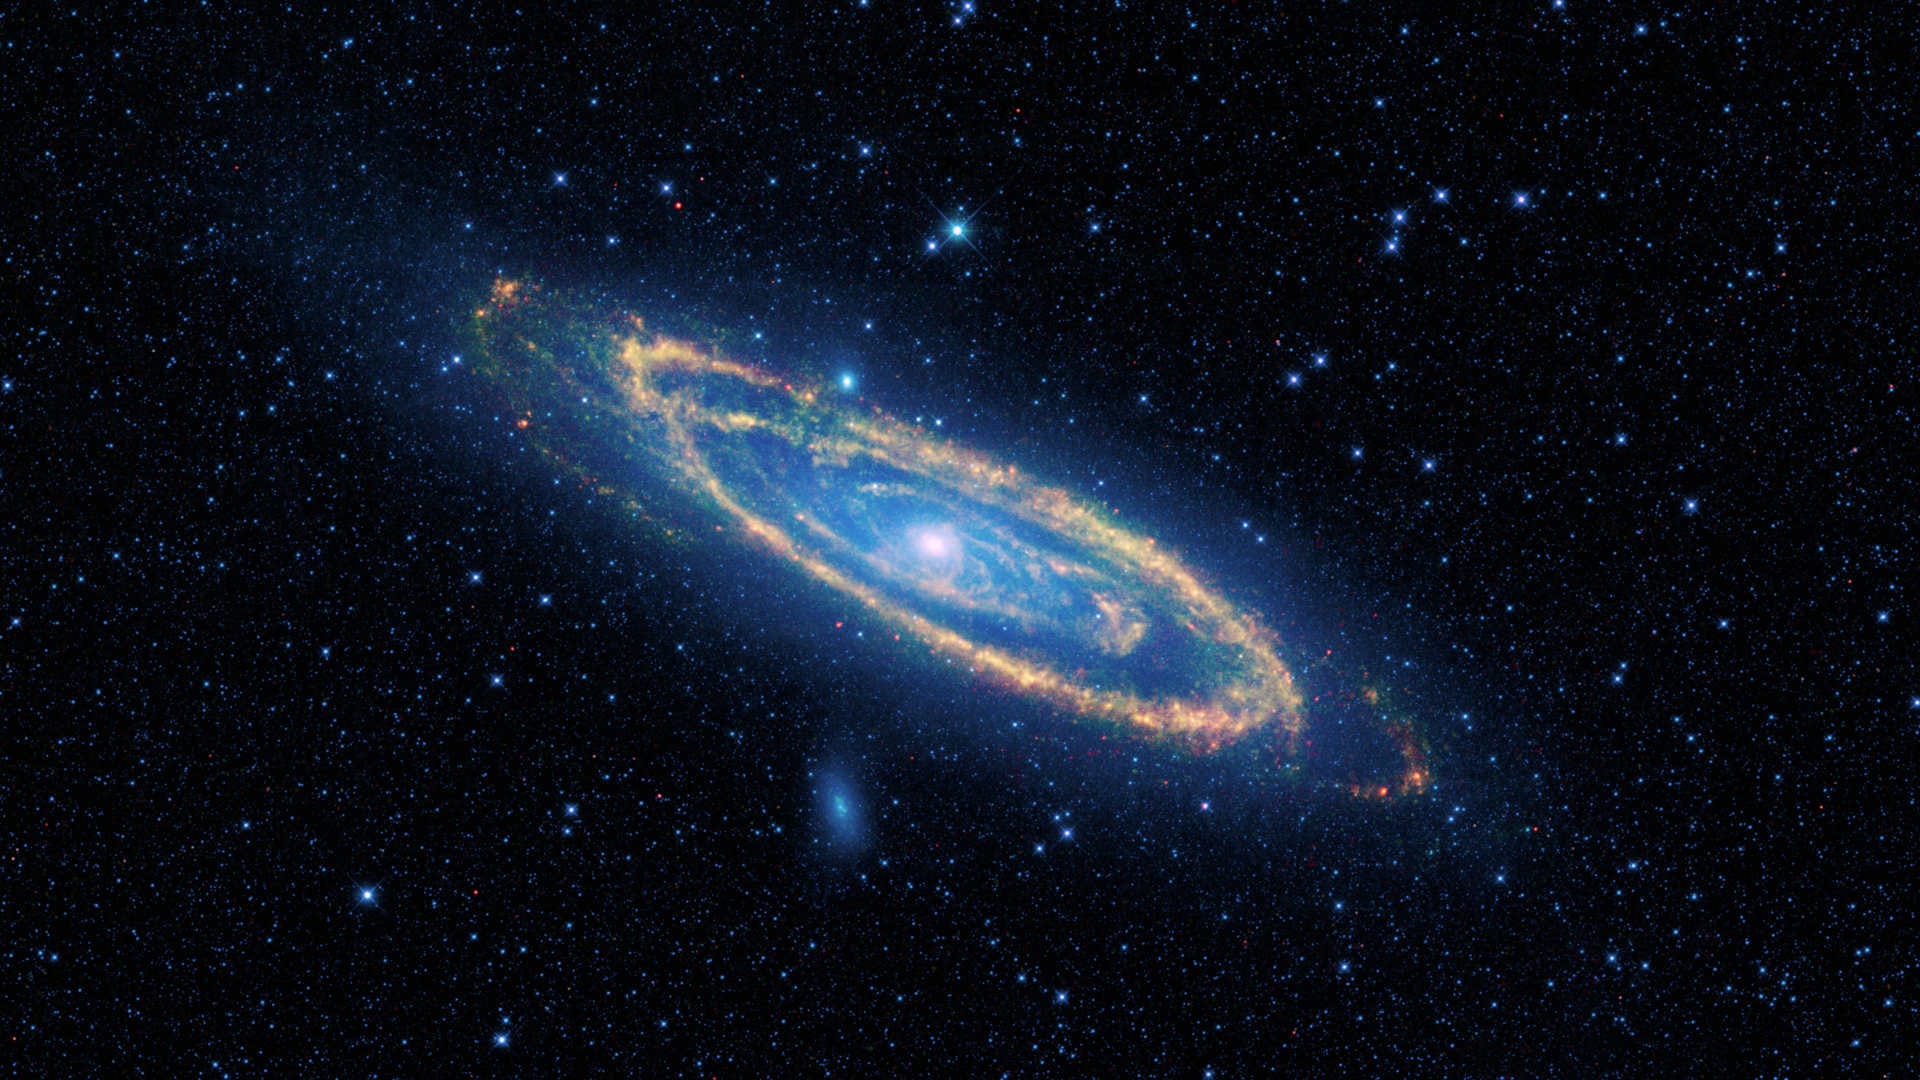 De Andromedanevel (M31) – Bekijk een reusachtig sterrenstelsel tijdens maanloze nachten